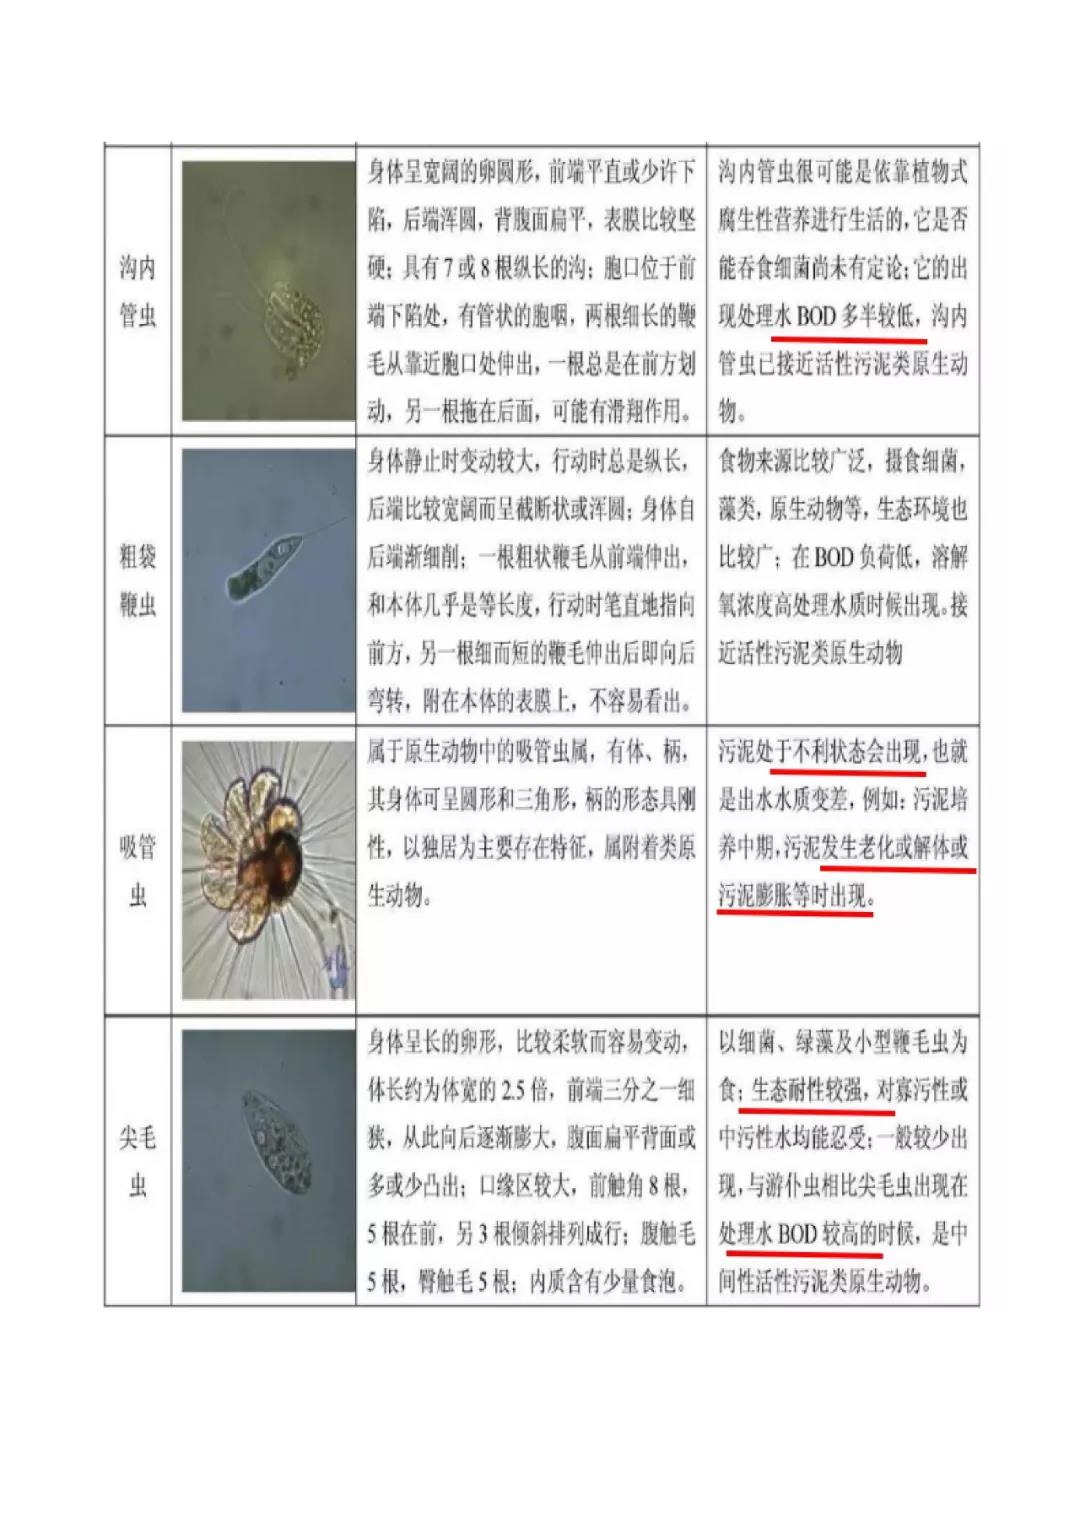 活性污泥微生物镜检|附35种微生物图谱和10个问答-北京百微特环境科技